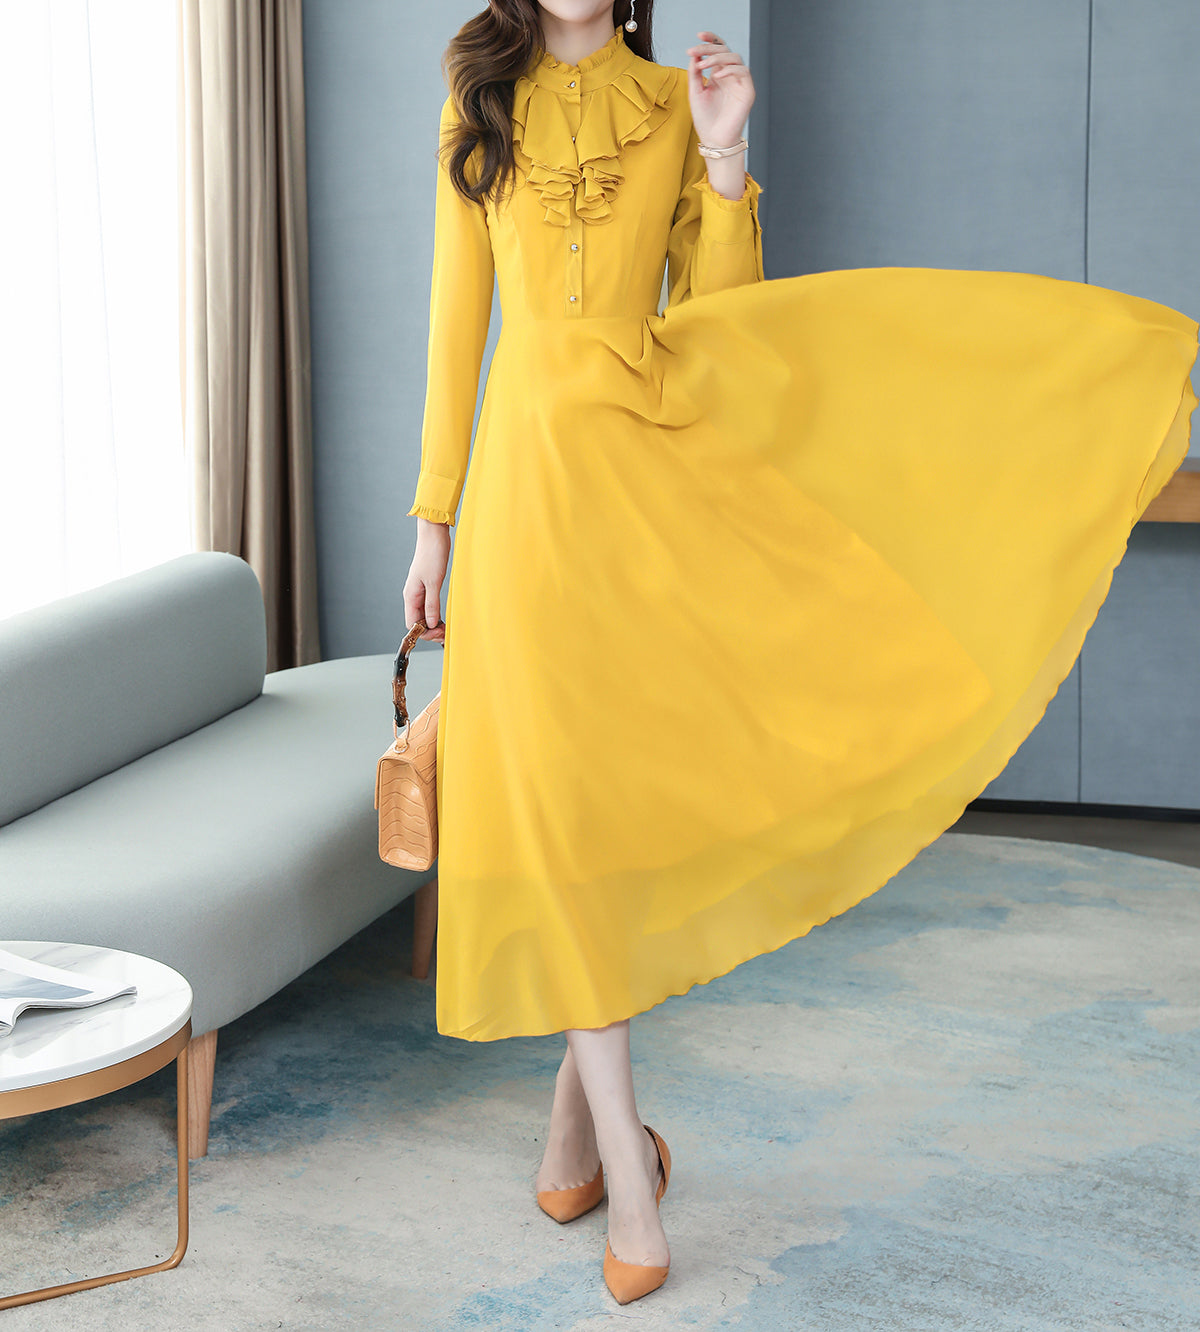 Classic Solid Color Long Sleeve Elegant Maxi Dress